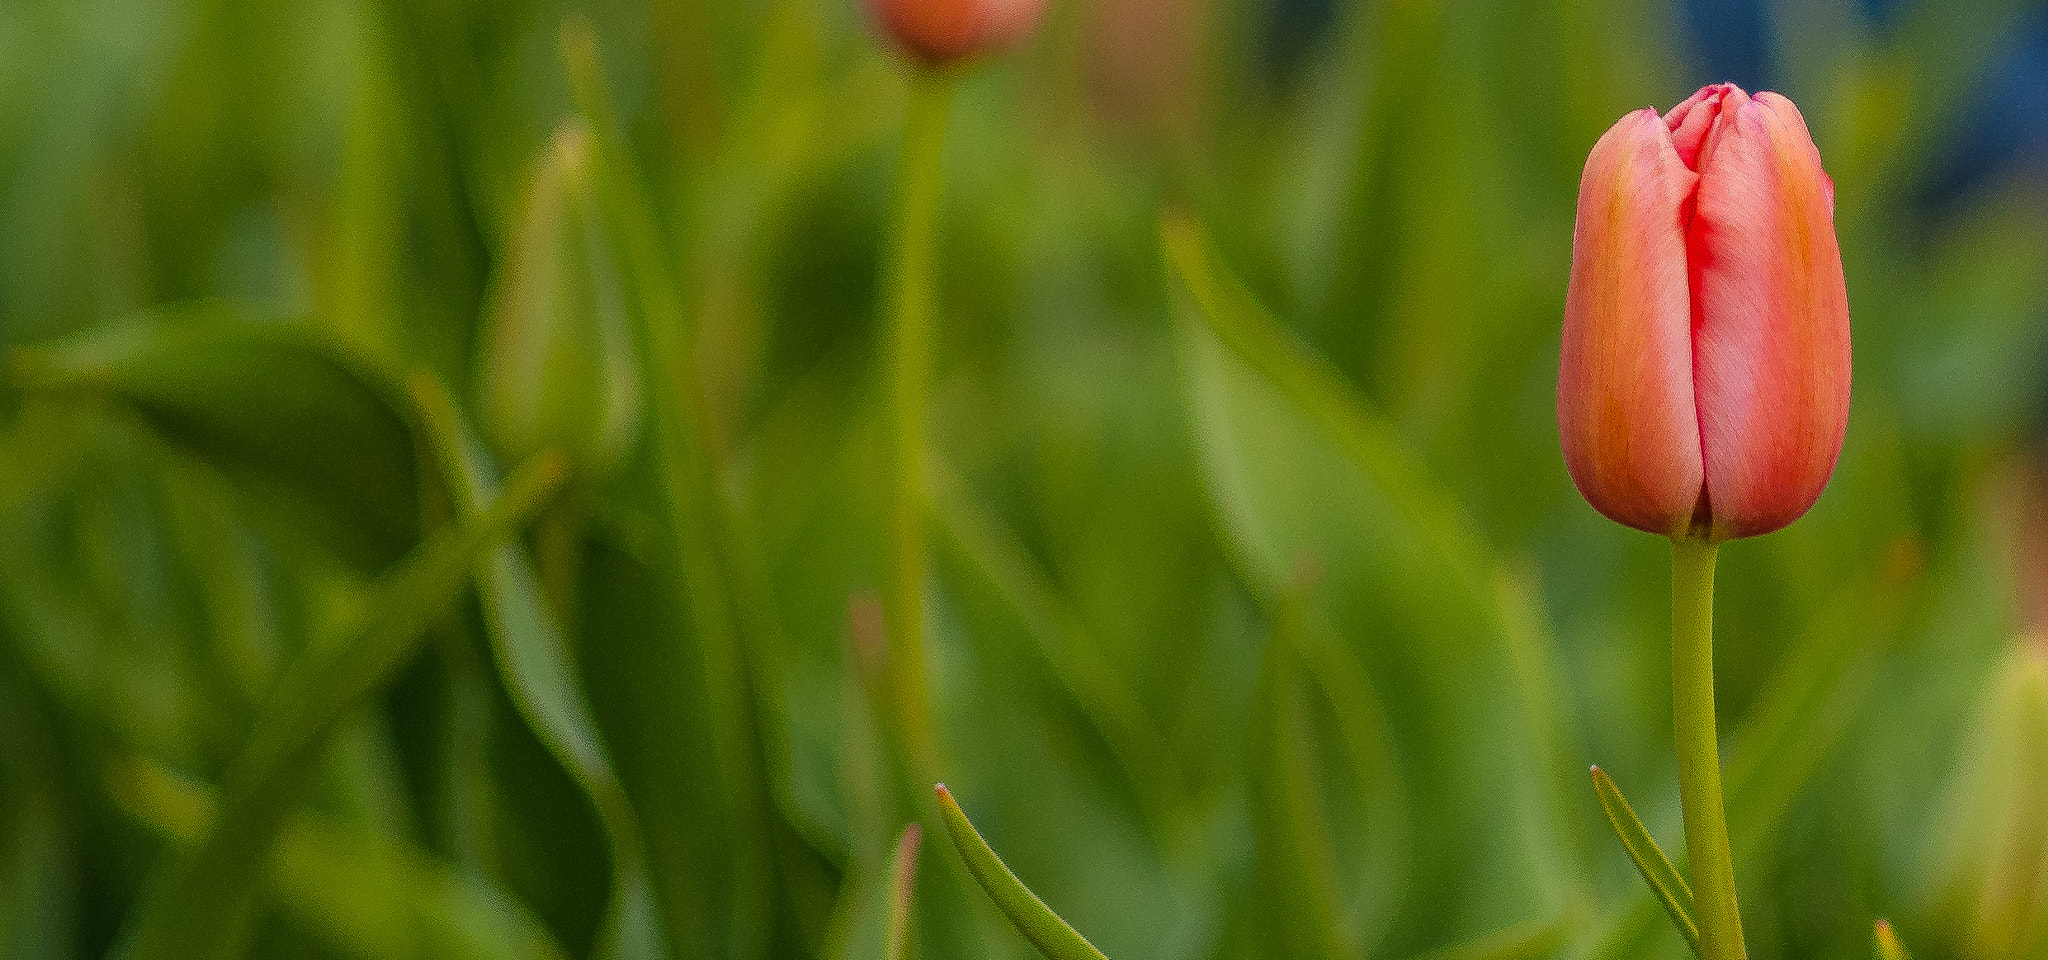 Sony Alpha DSLR-A300 sample photo. Texas tulips photography